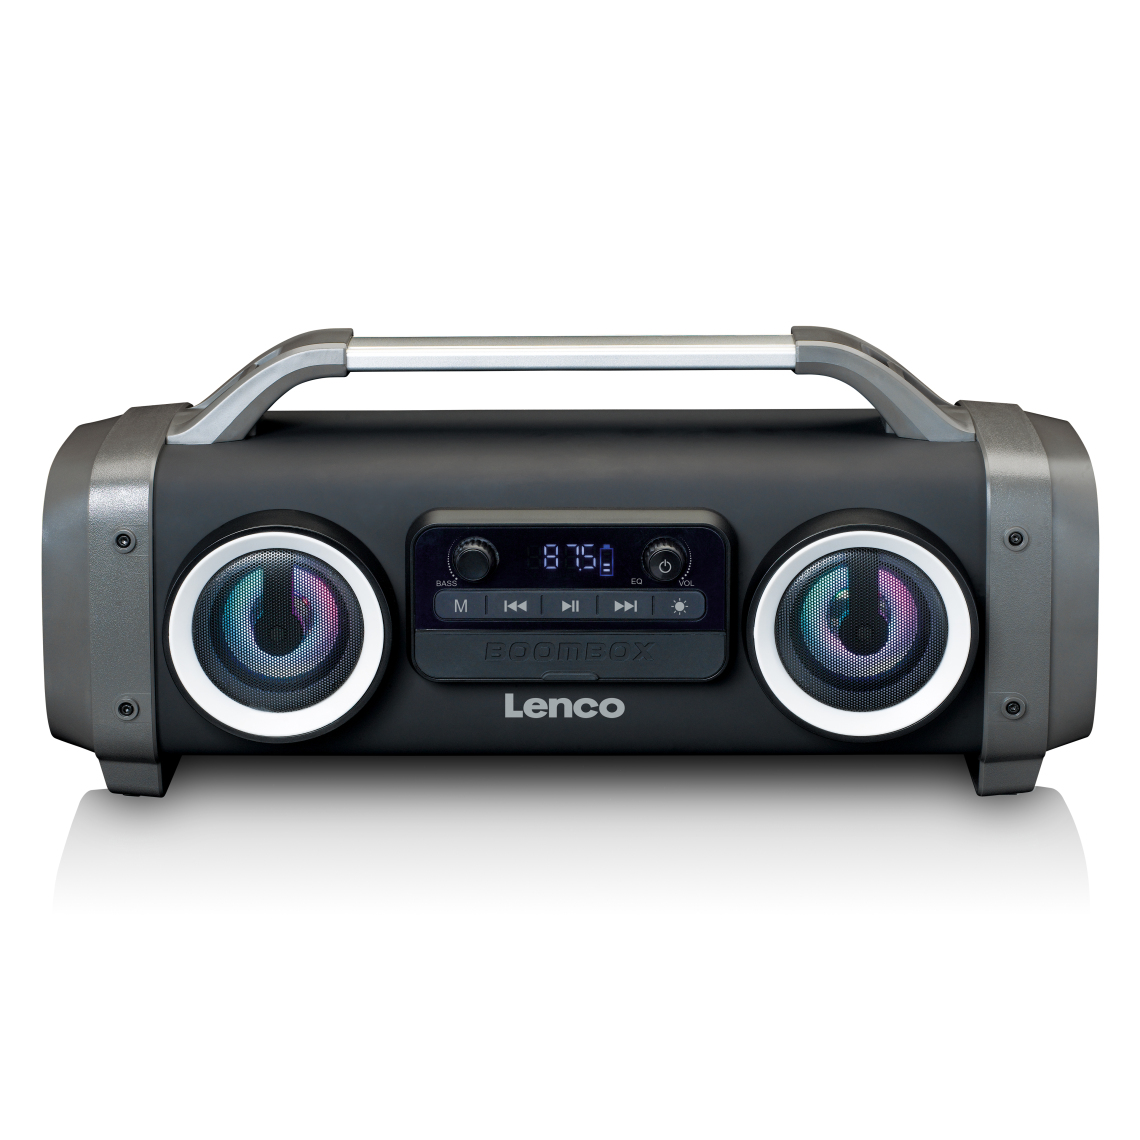 Lenco - Enceinte Bluetooth étanche avec radio FM, lecteur USB/SD et effets lumineux SPR-100BK Noir - Enceintes Hifi